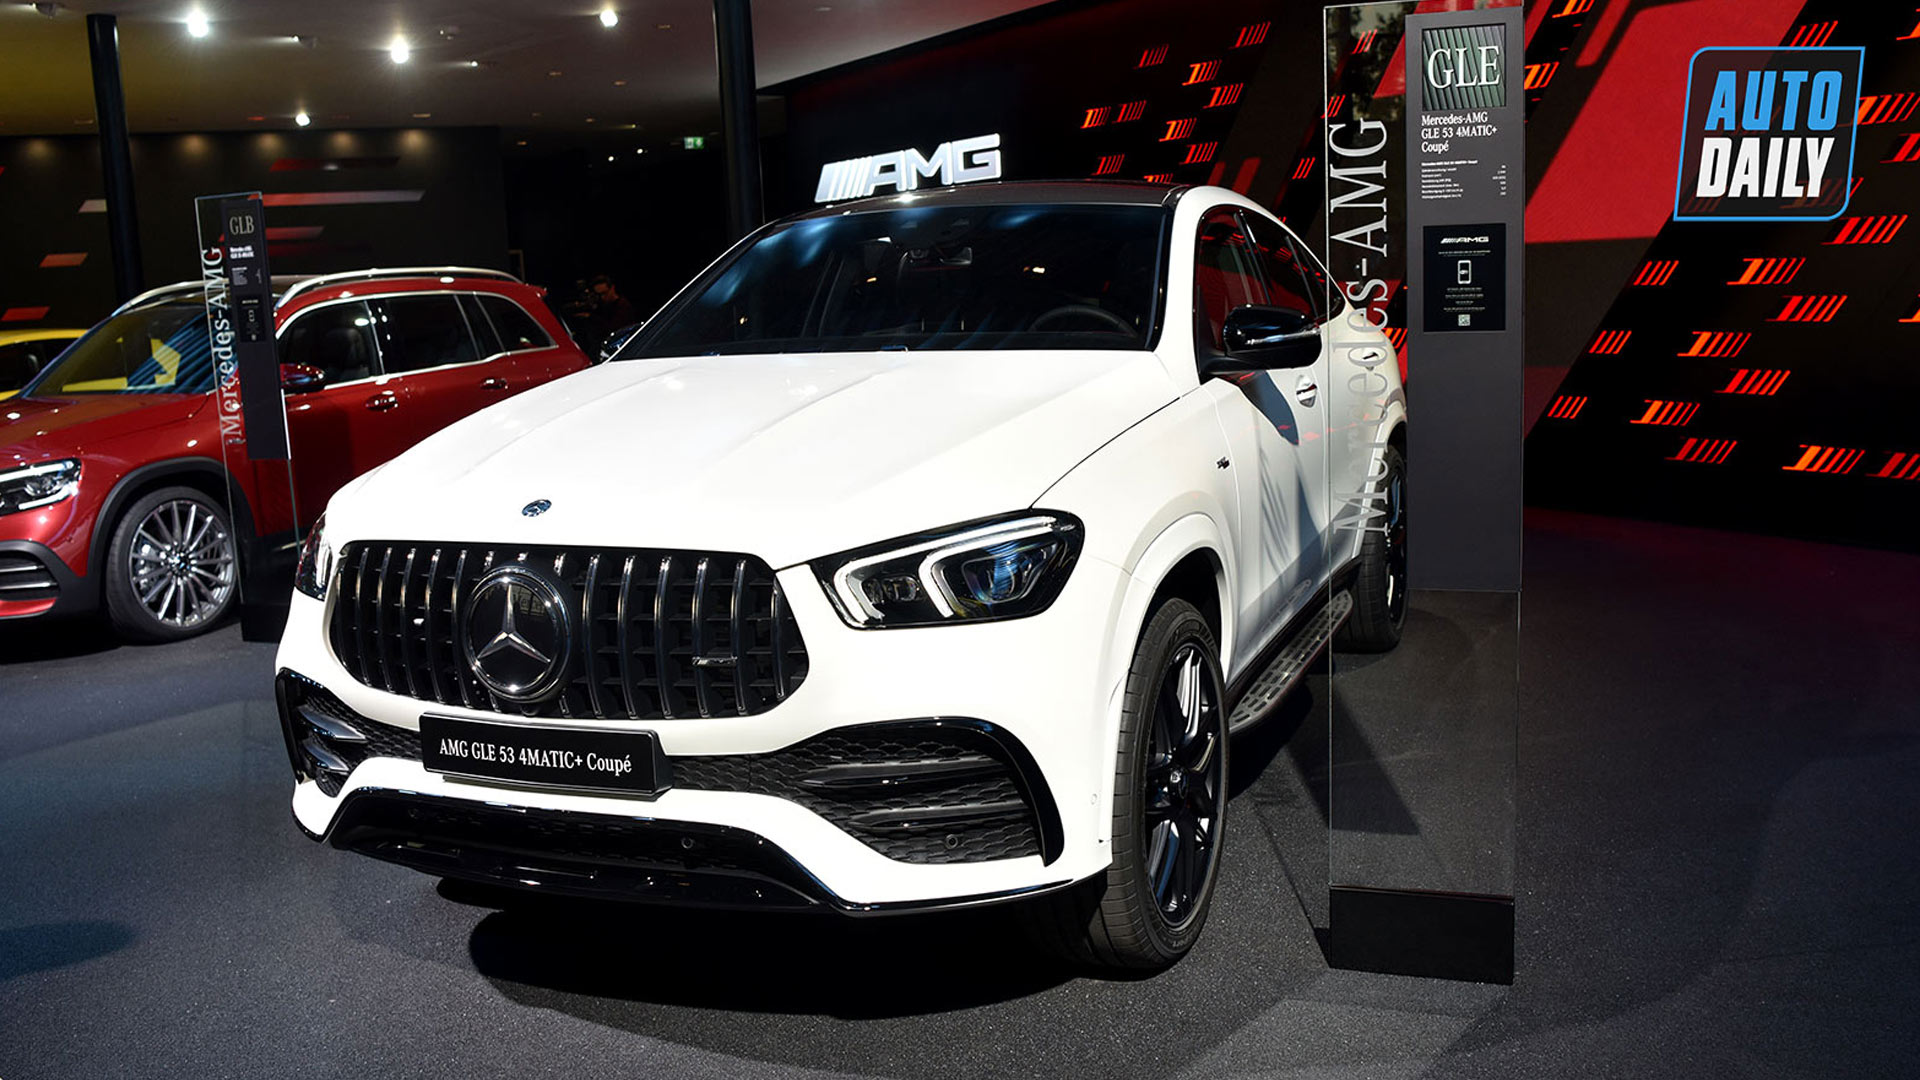 Khám phá chi tiết Mercedes-Benz GLE Coupe 2020 tại Frankfurt Auto Show 2019